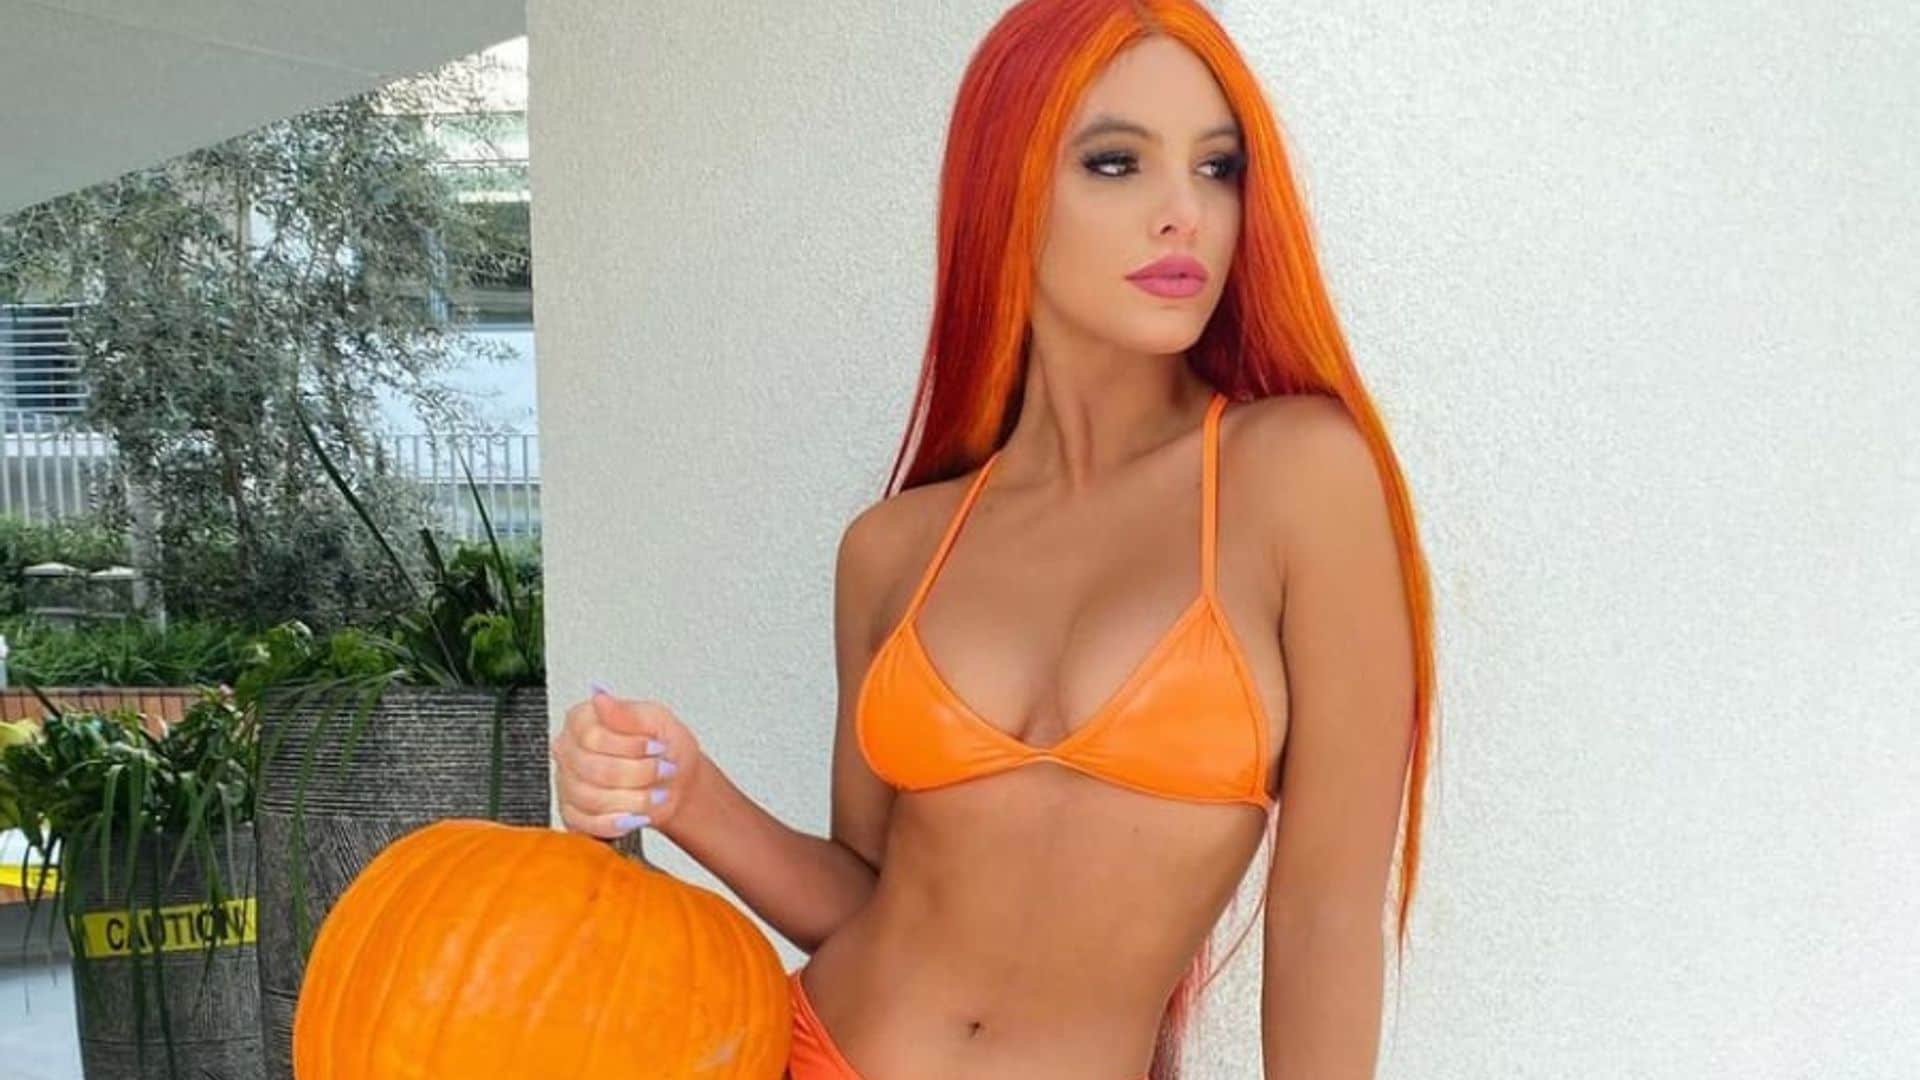 Lele Pons goes full Halloween glam in an orange bikini